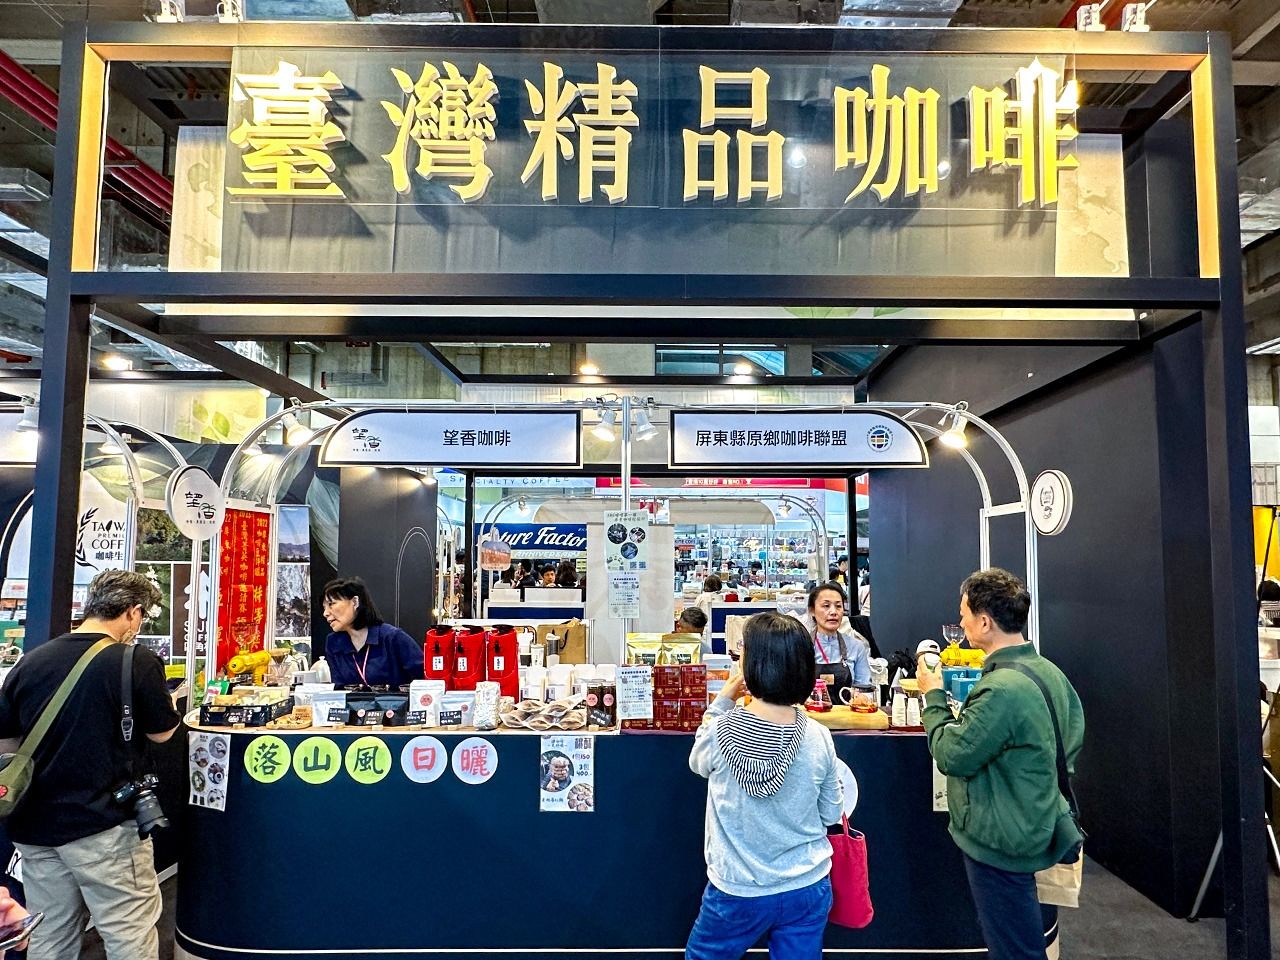 「台湾国際珈琲展」での台湾プレミアムコーヒーを提供するブース